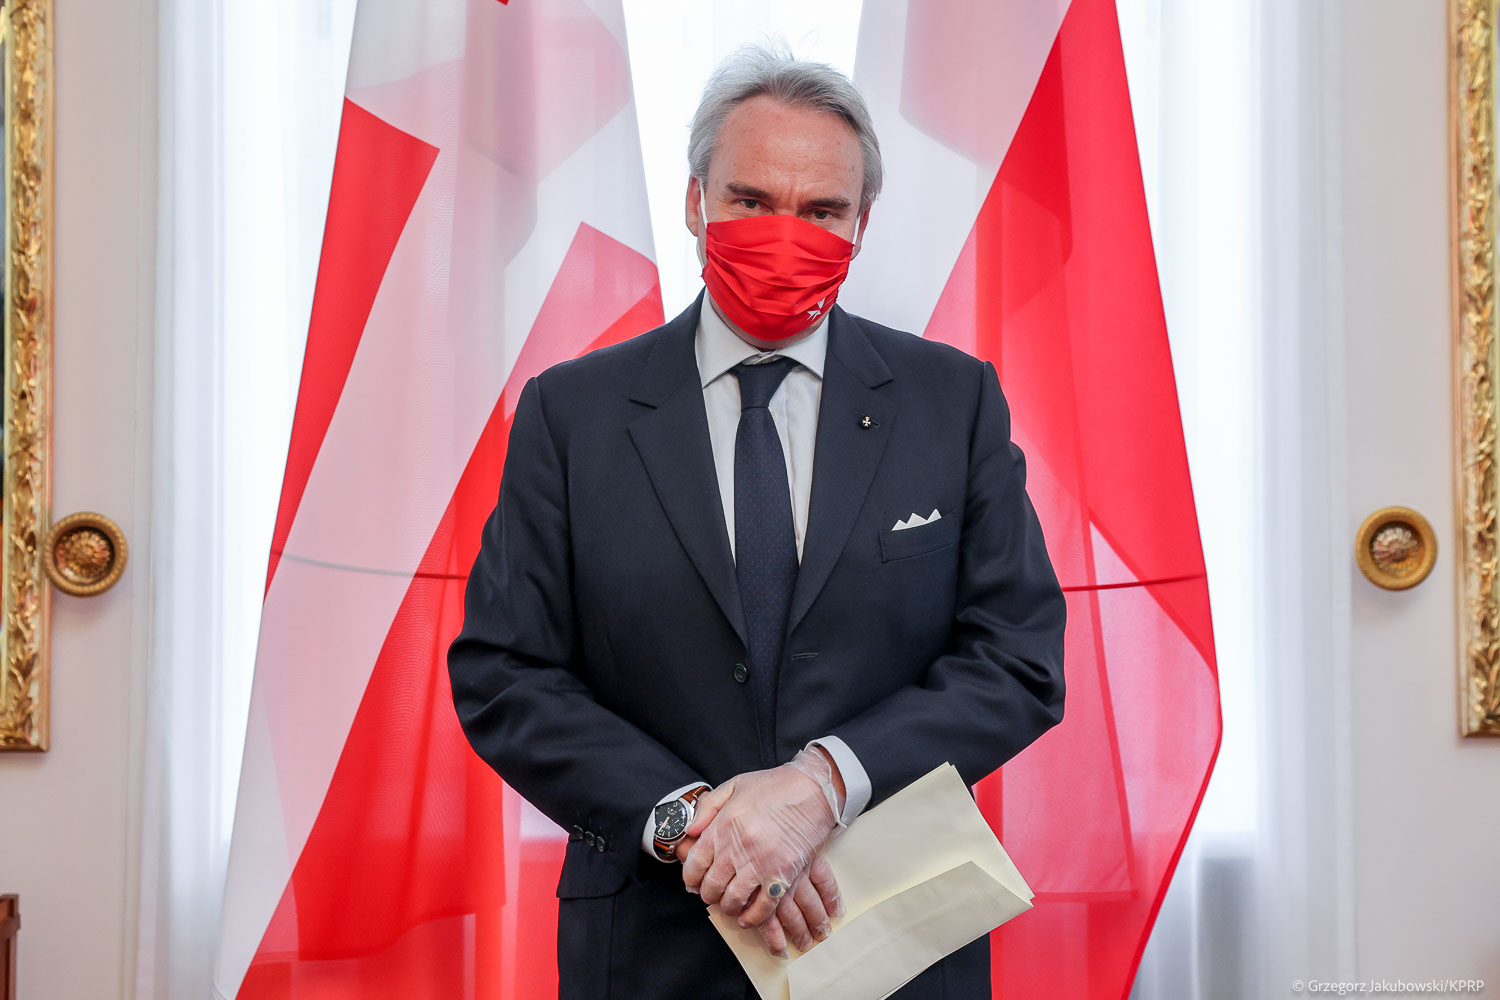 Der Präsident der Republik Polen nahm das Beglaubigungsschreiben von neuem Botschafter des Souveränen Malteserordens